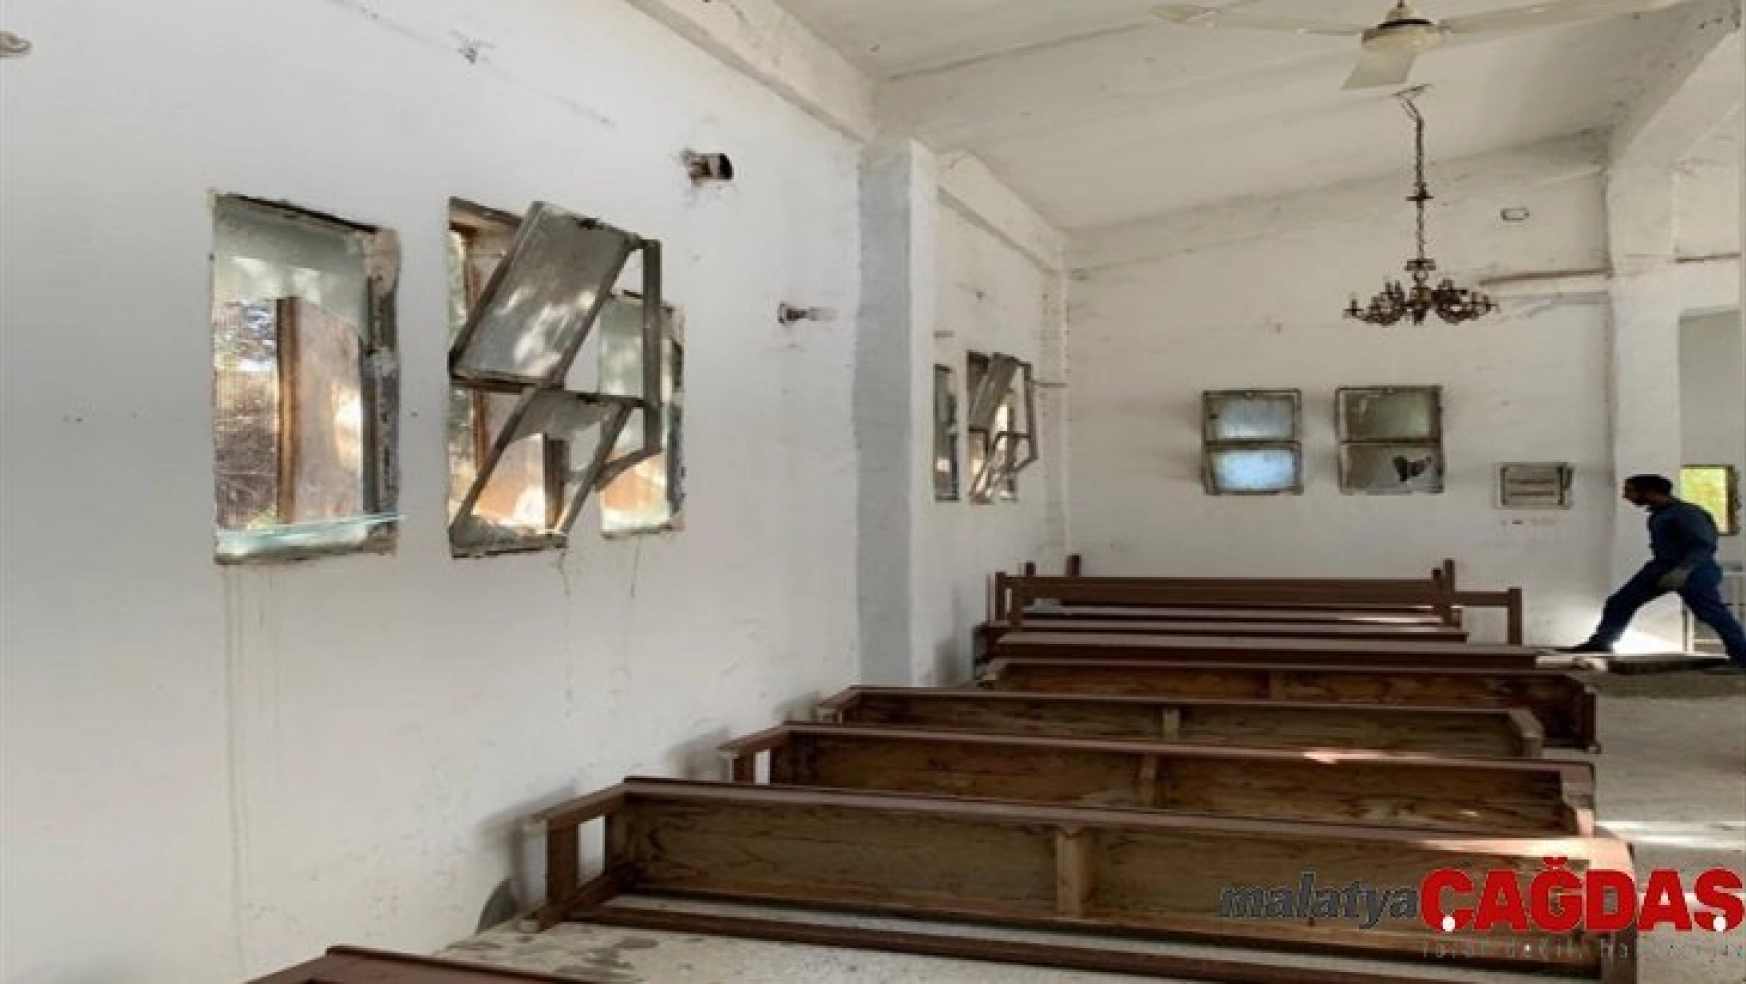 Tel Abyad'da Ermeni kilisesi temizlenerek camları yenilendi